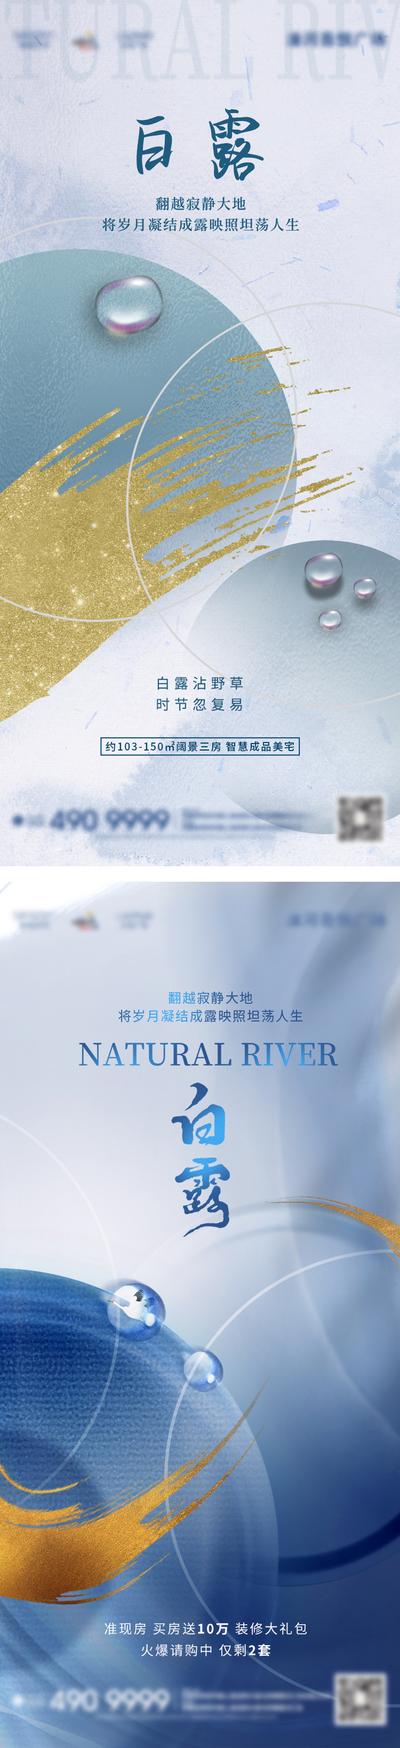 南门网 广告 海报 地产 白露 节气 系列 品质 高端